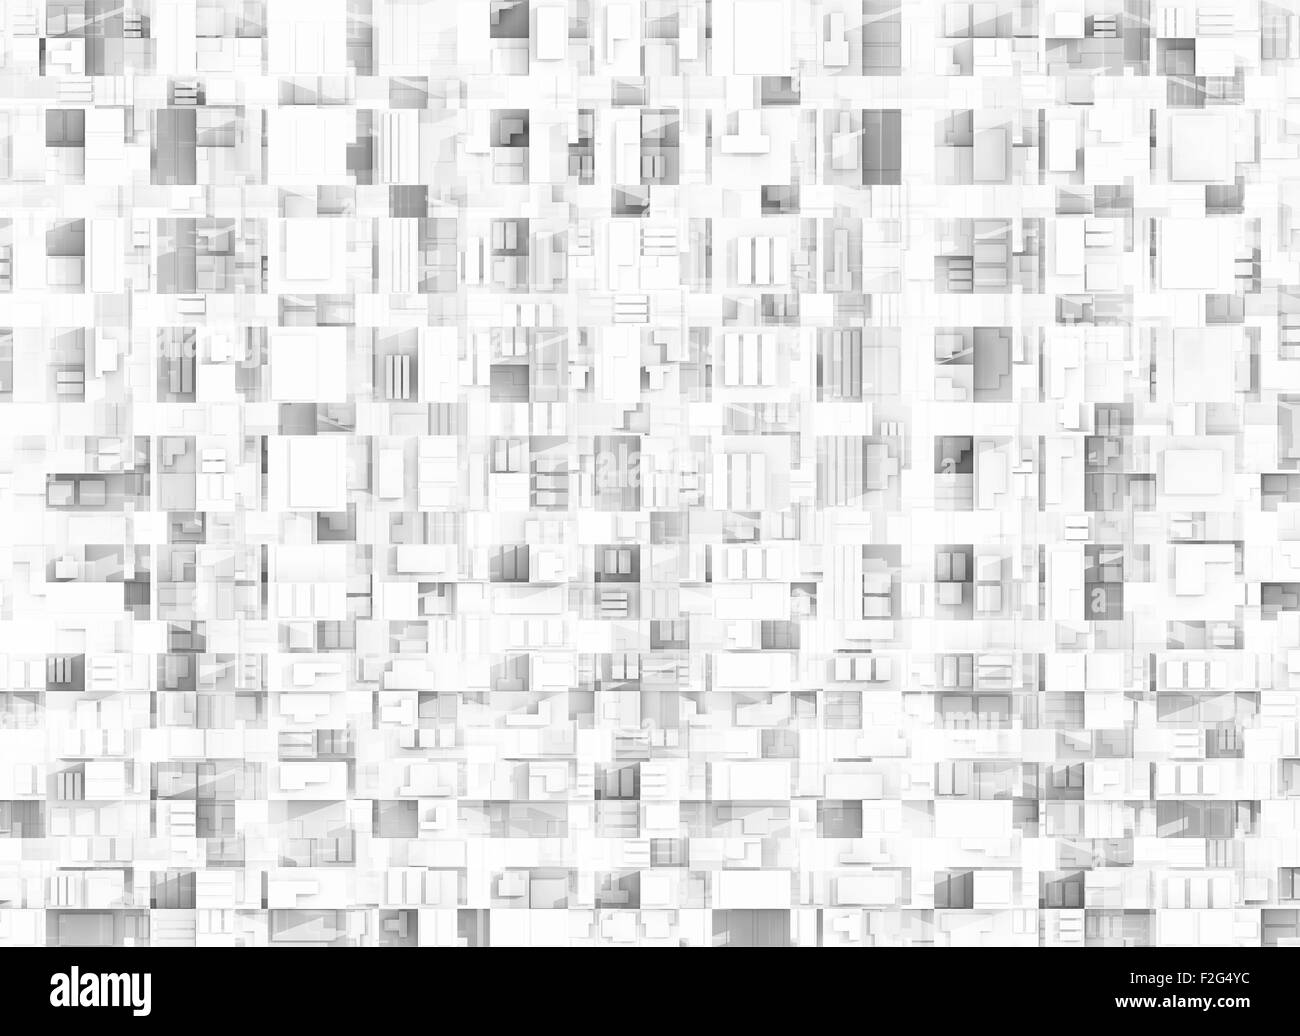 Texture de fond technique géométrique abstraite, chaotique motif carré Banque D'Images